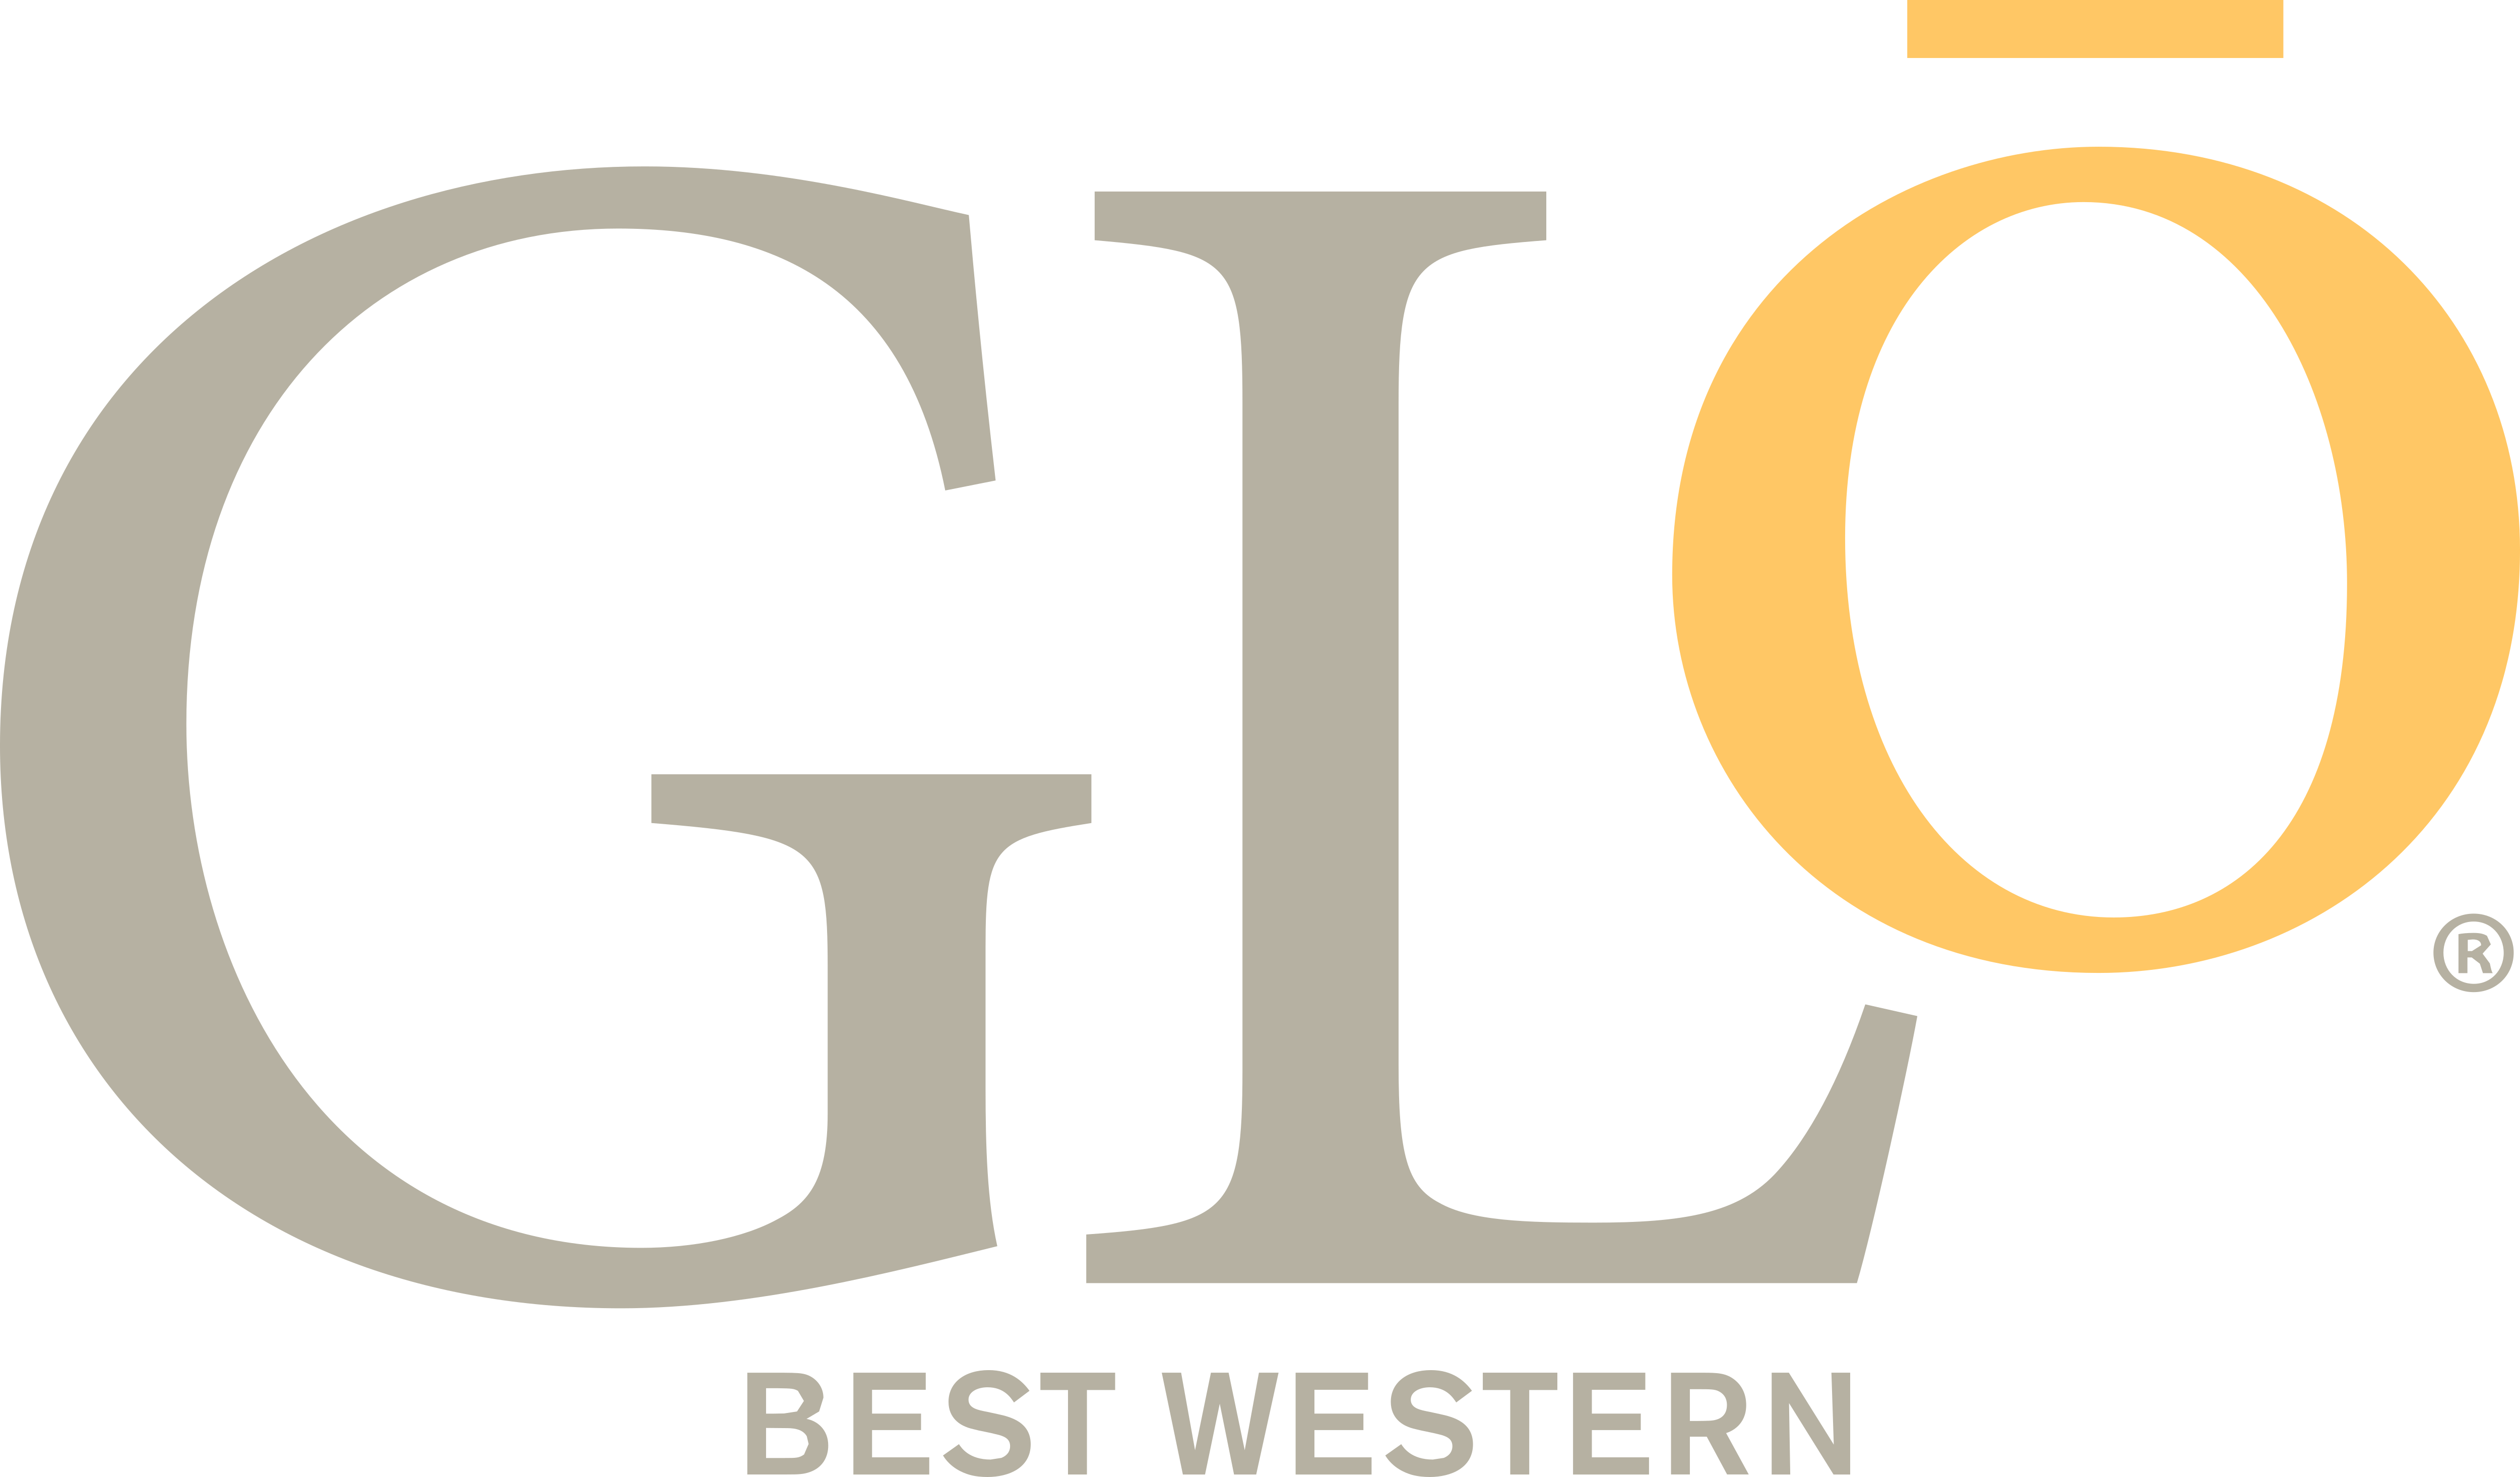 Glo Logo - Best Western Glo